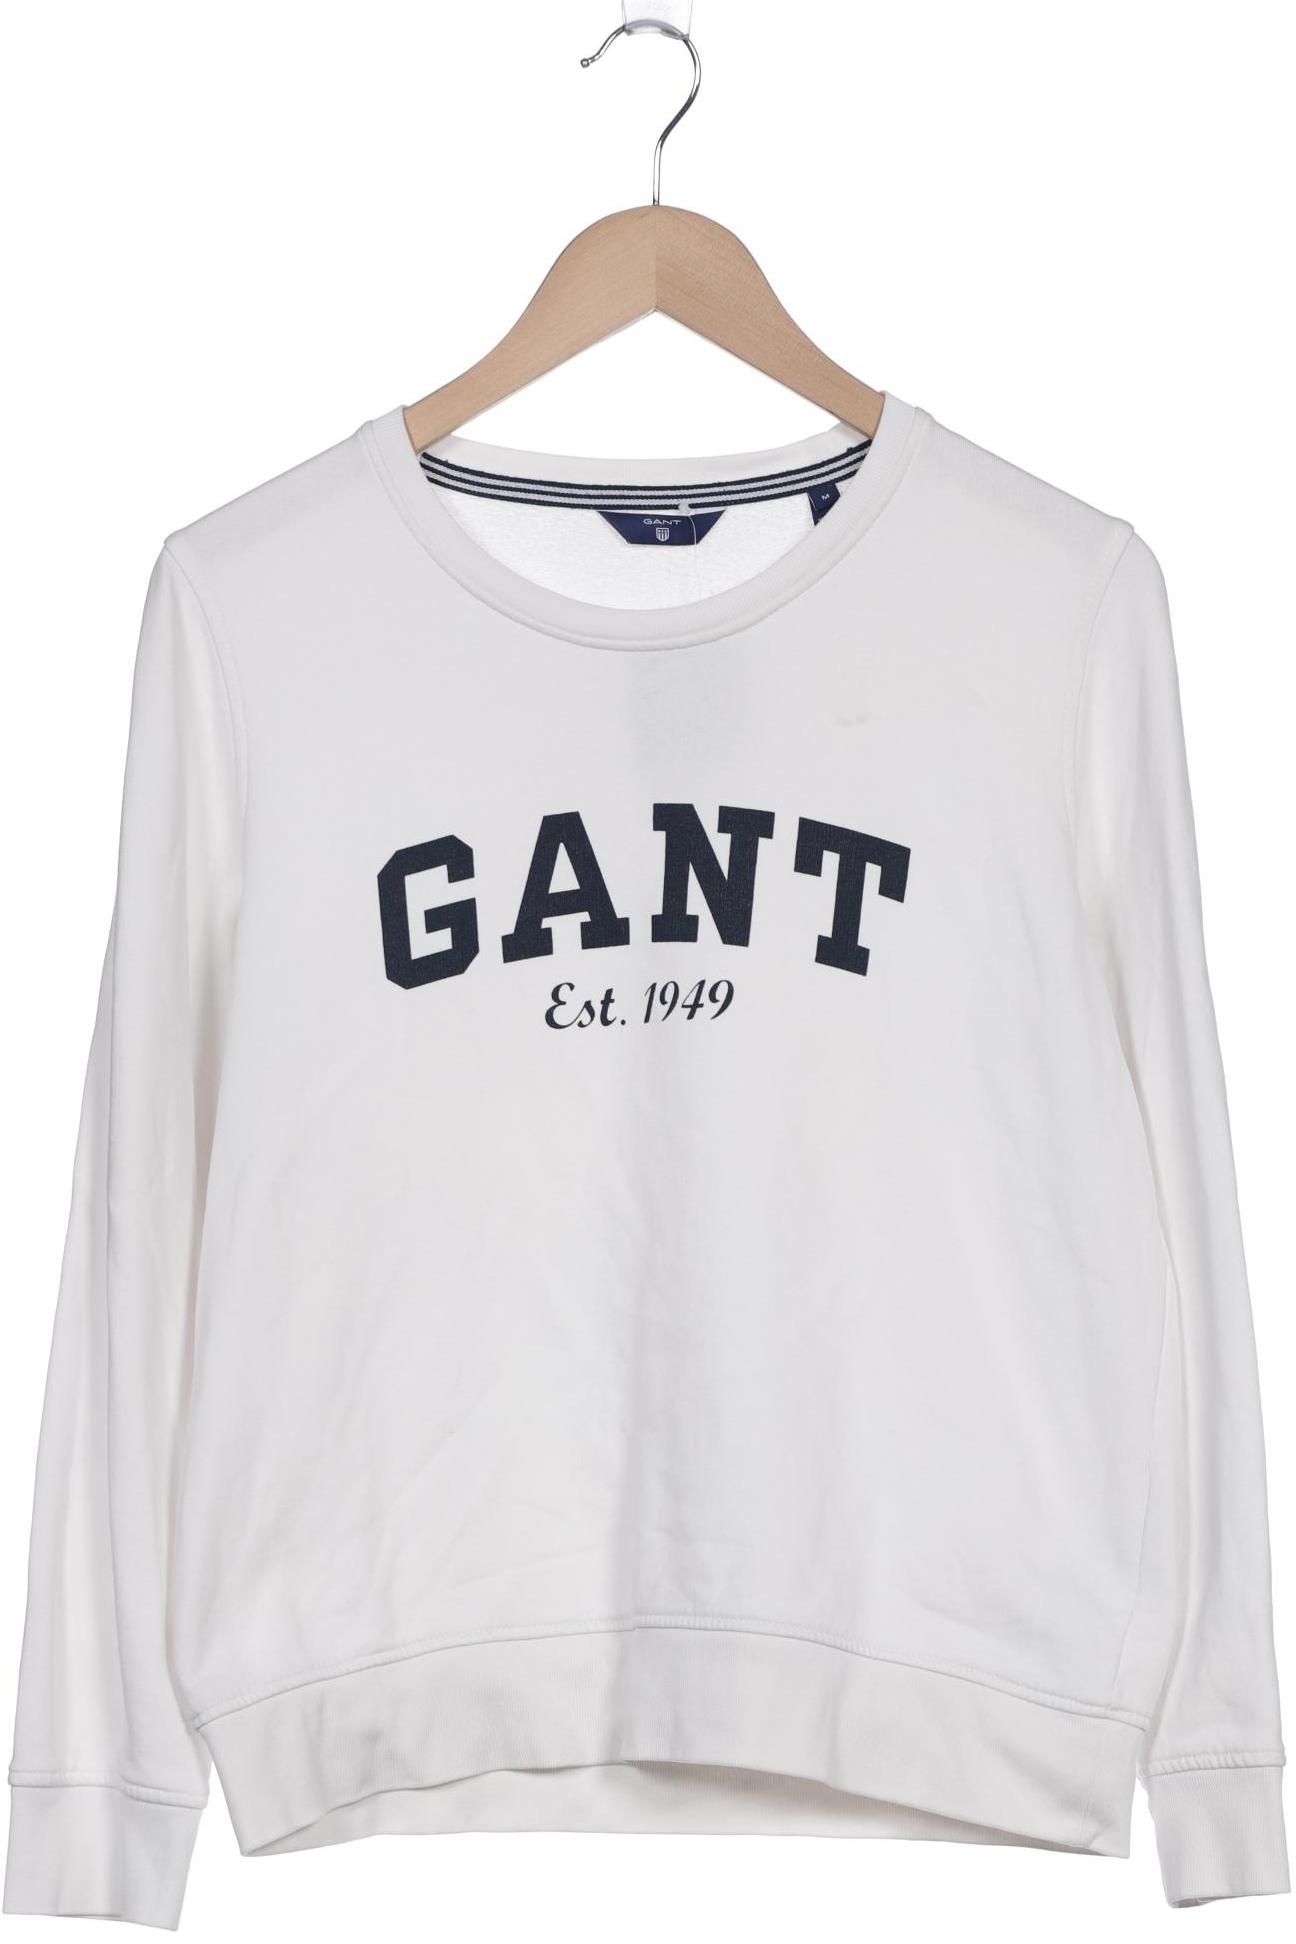 GANT Damen Sweatshirt, weiß von Gant